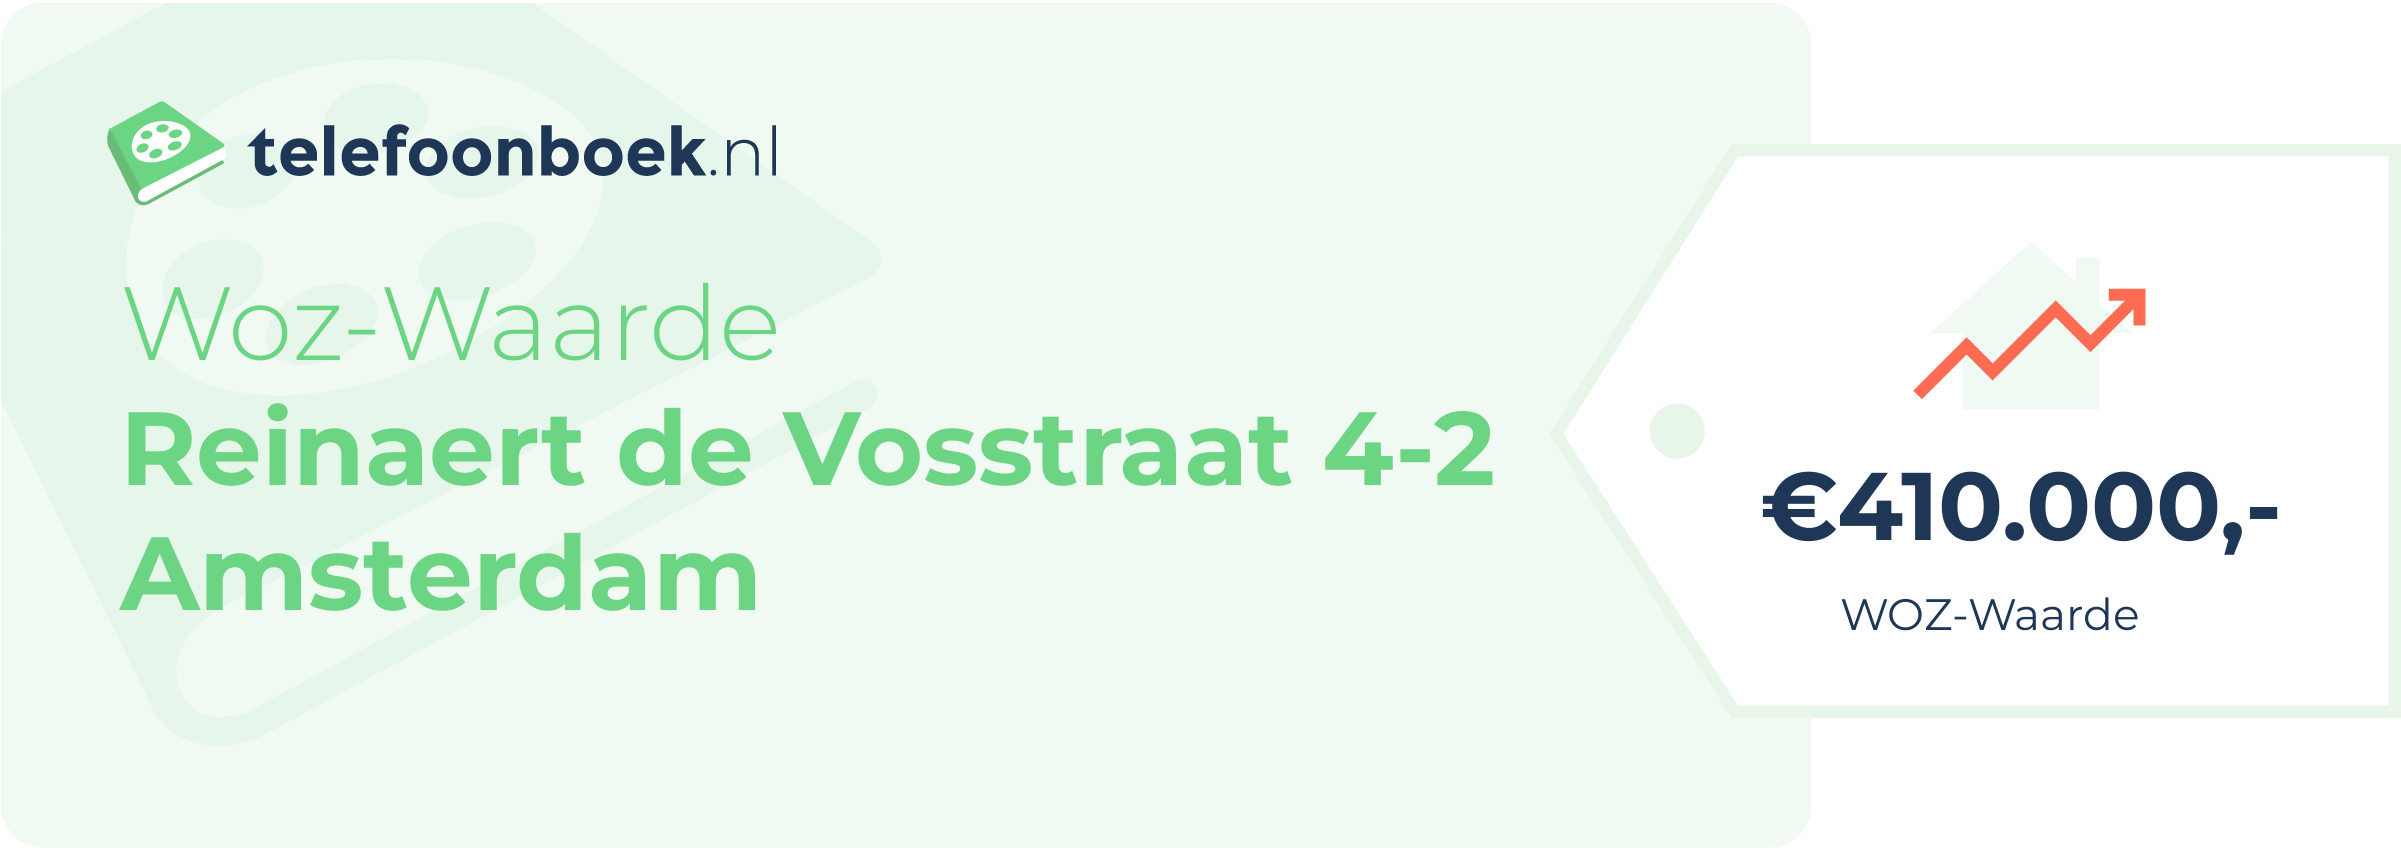 WOZ-waarde Reinaert De Vosstraat 4-2 Amsterdam